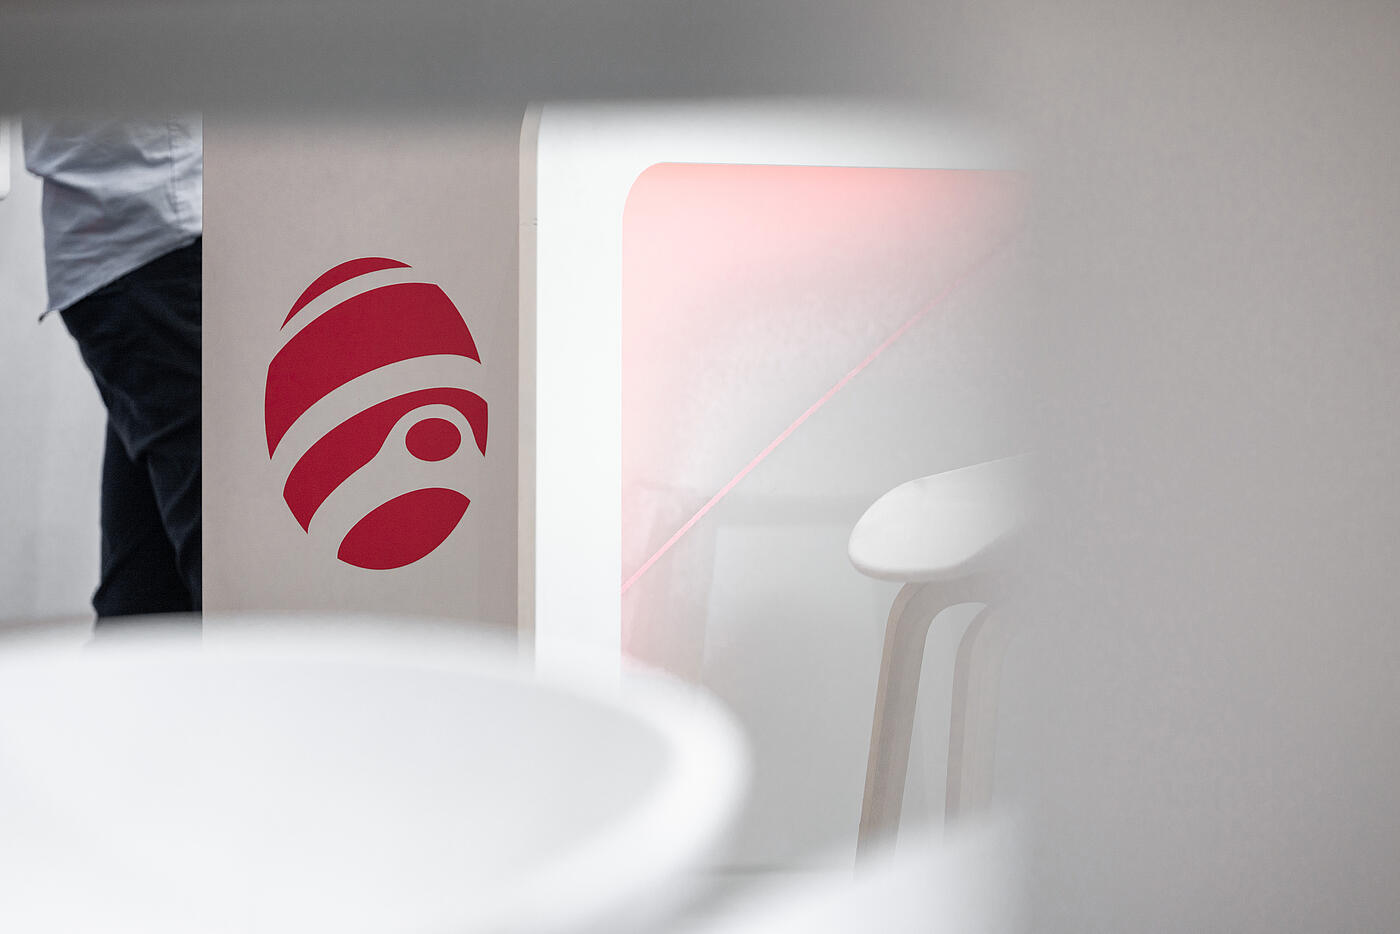 Ausschnitt eines Messestands fürs Netzkontor im Close-Up. Das neu entwickelte rote Logo ist zu sehen.